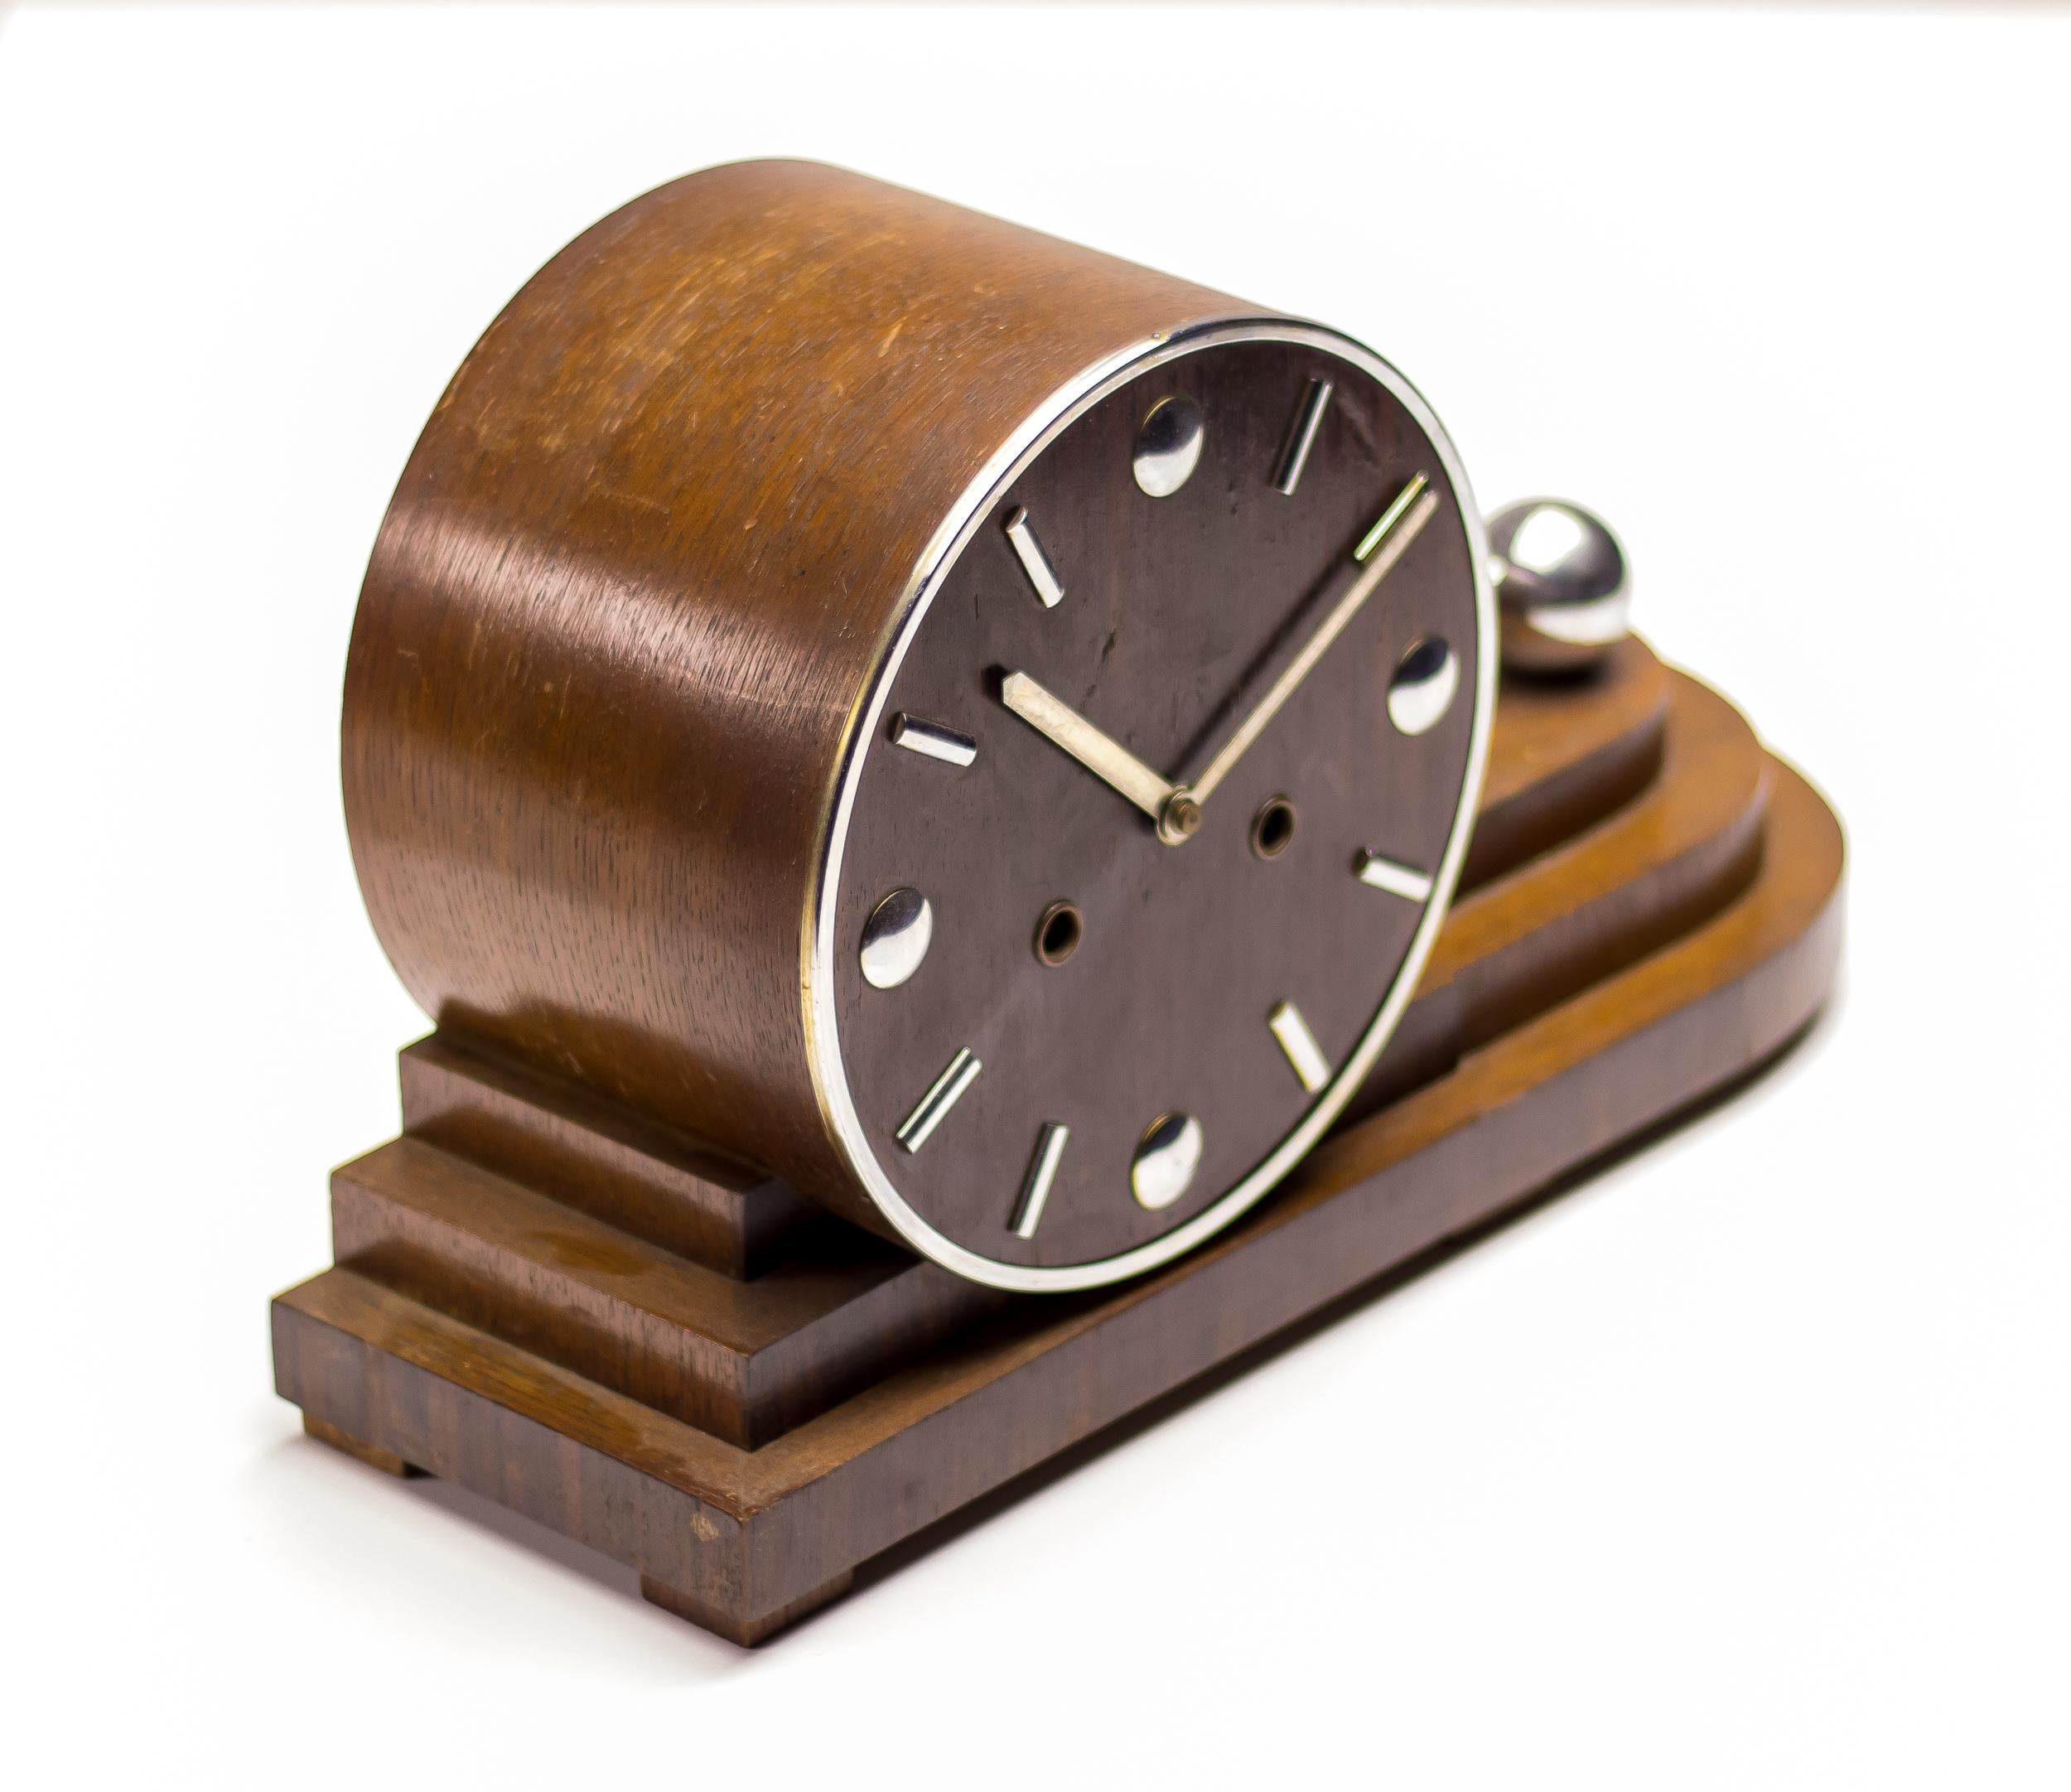 Modernistische stromlinienförmige Uhr der 1920er Jahre aus Makassar und Chrom.
Diese Kaminuhr aus der 